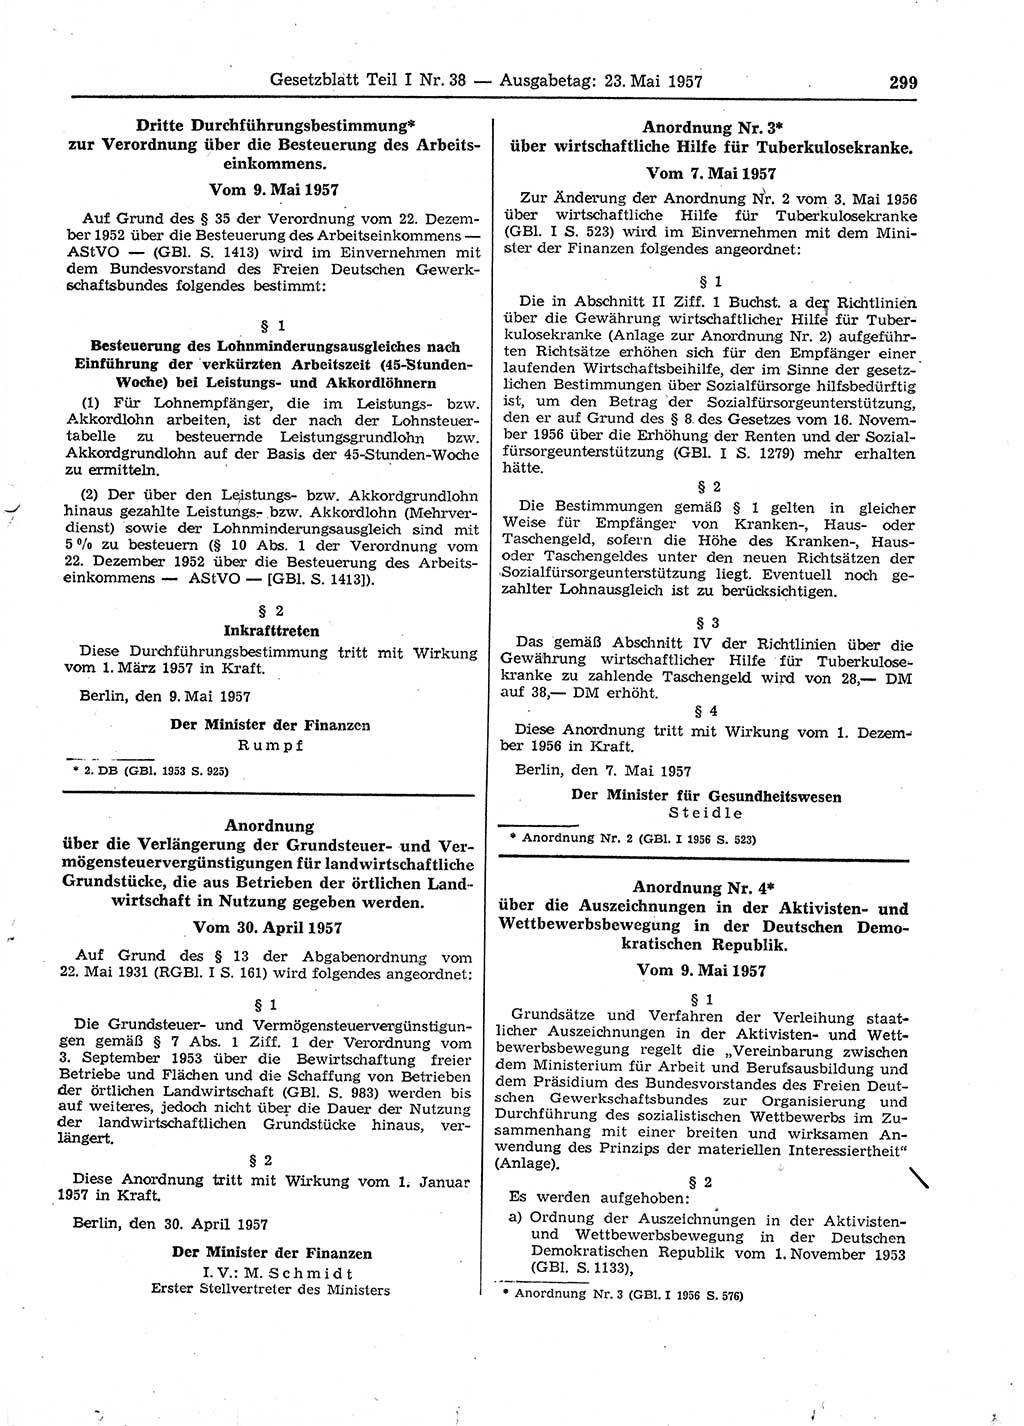 Gesetzblatt (GBl.) der Deutschen Demokratischen Republik (DDR) Teil Ⅰ 1957, Seite 299 (GBl. DDR Ⅰ 1957, S. 299)